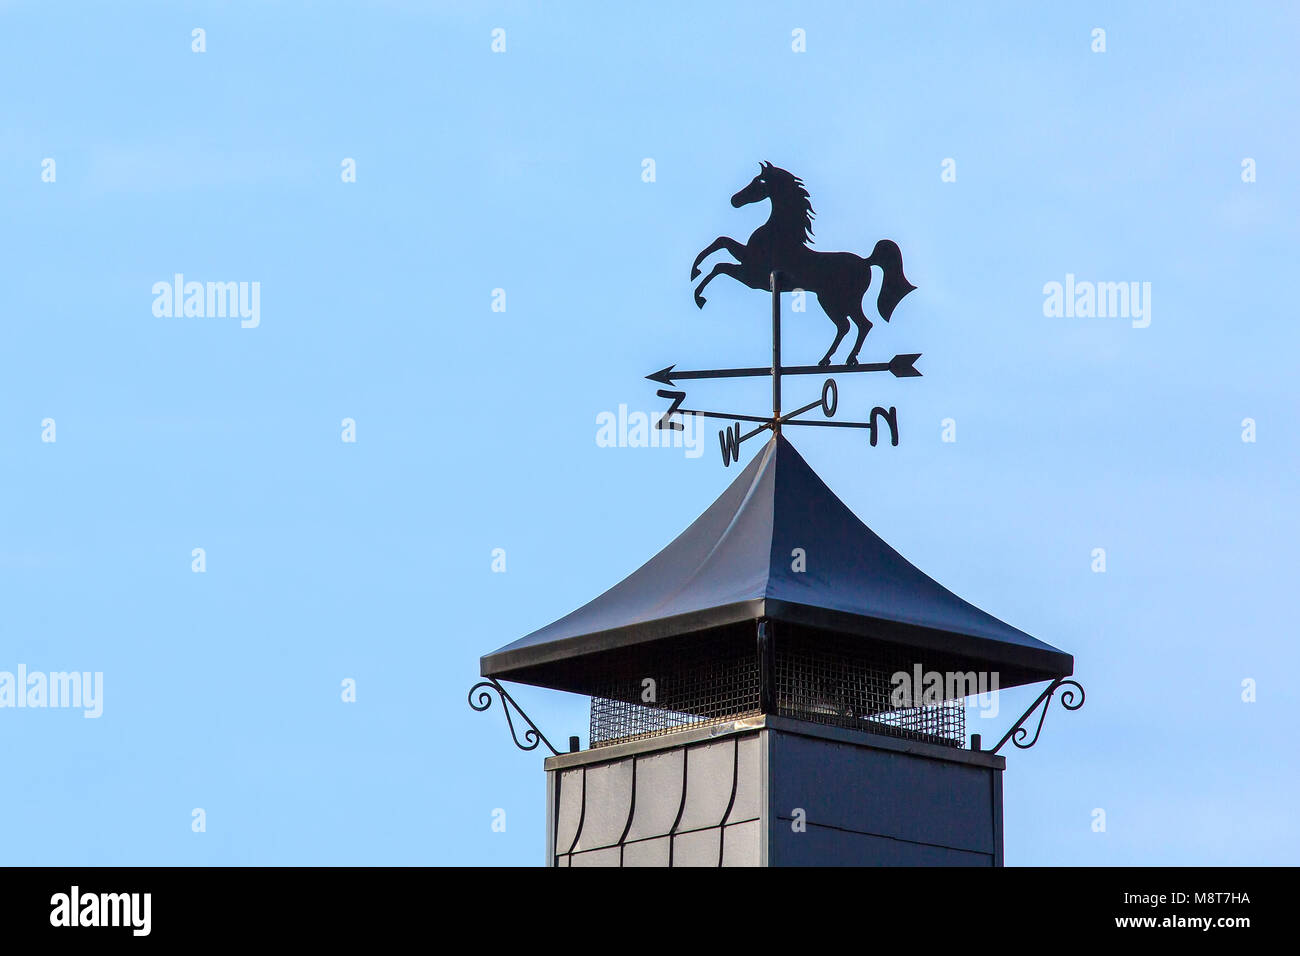 Black metal horse sur girouette debout sur Chapeau de cheminée Photo Stock  - Alamy